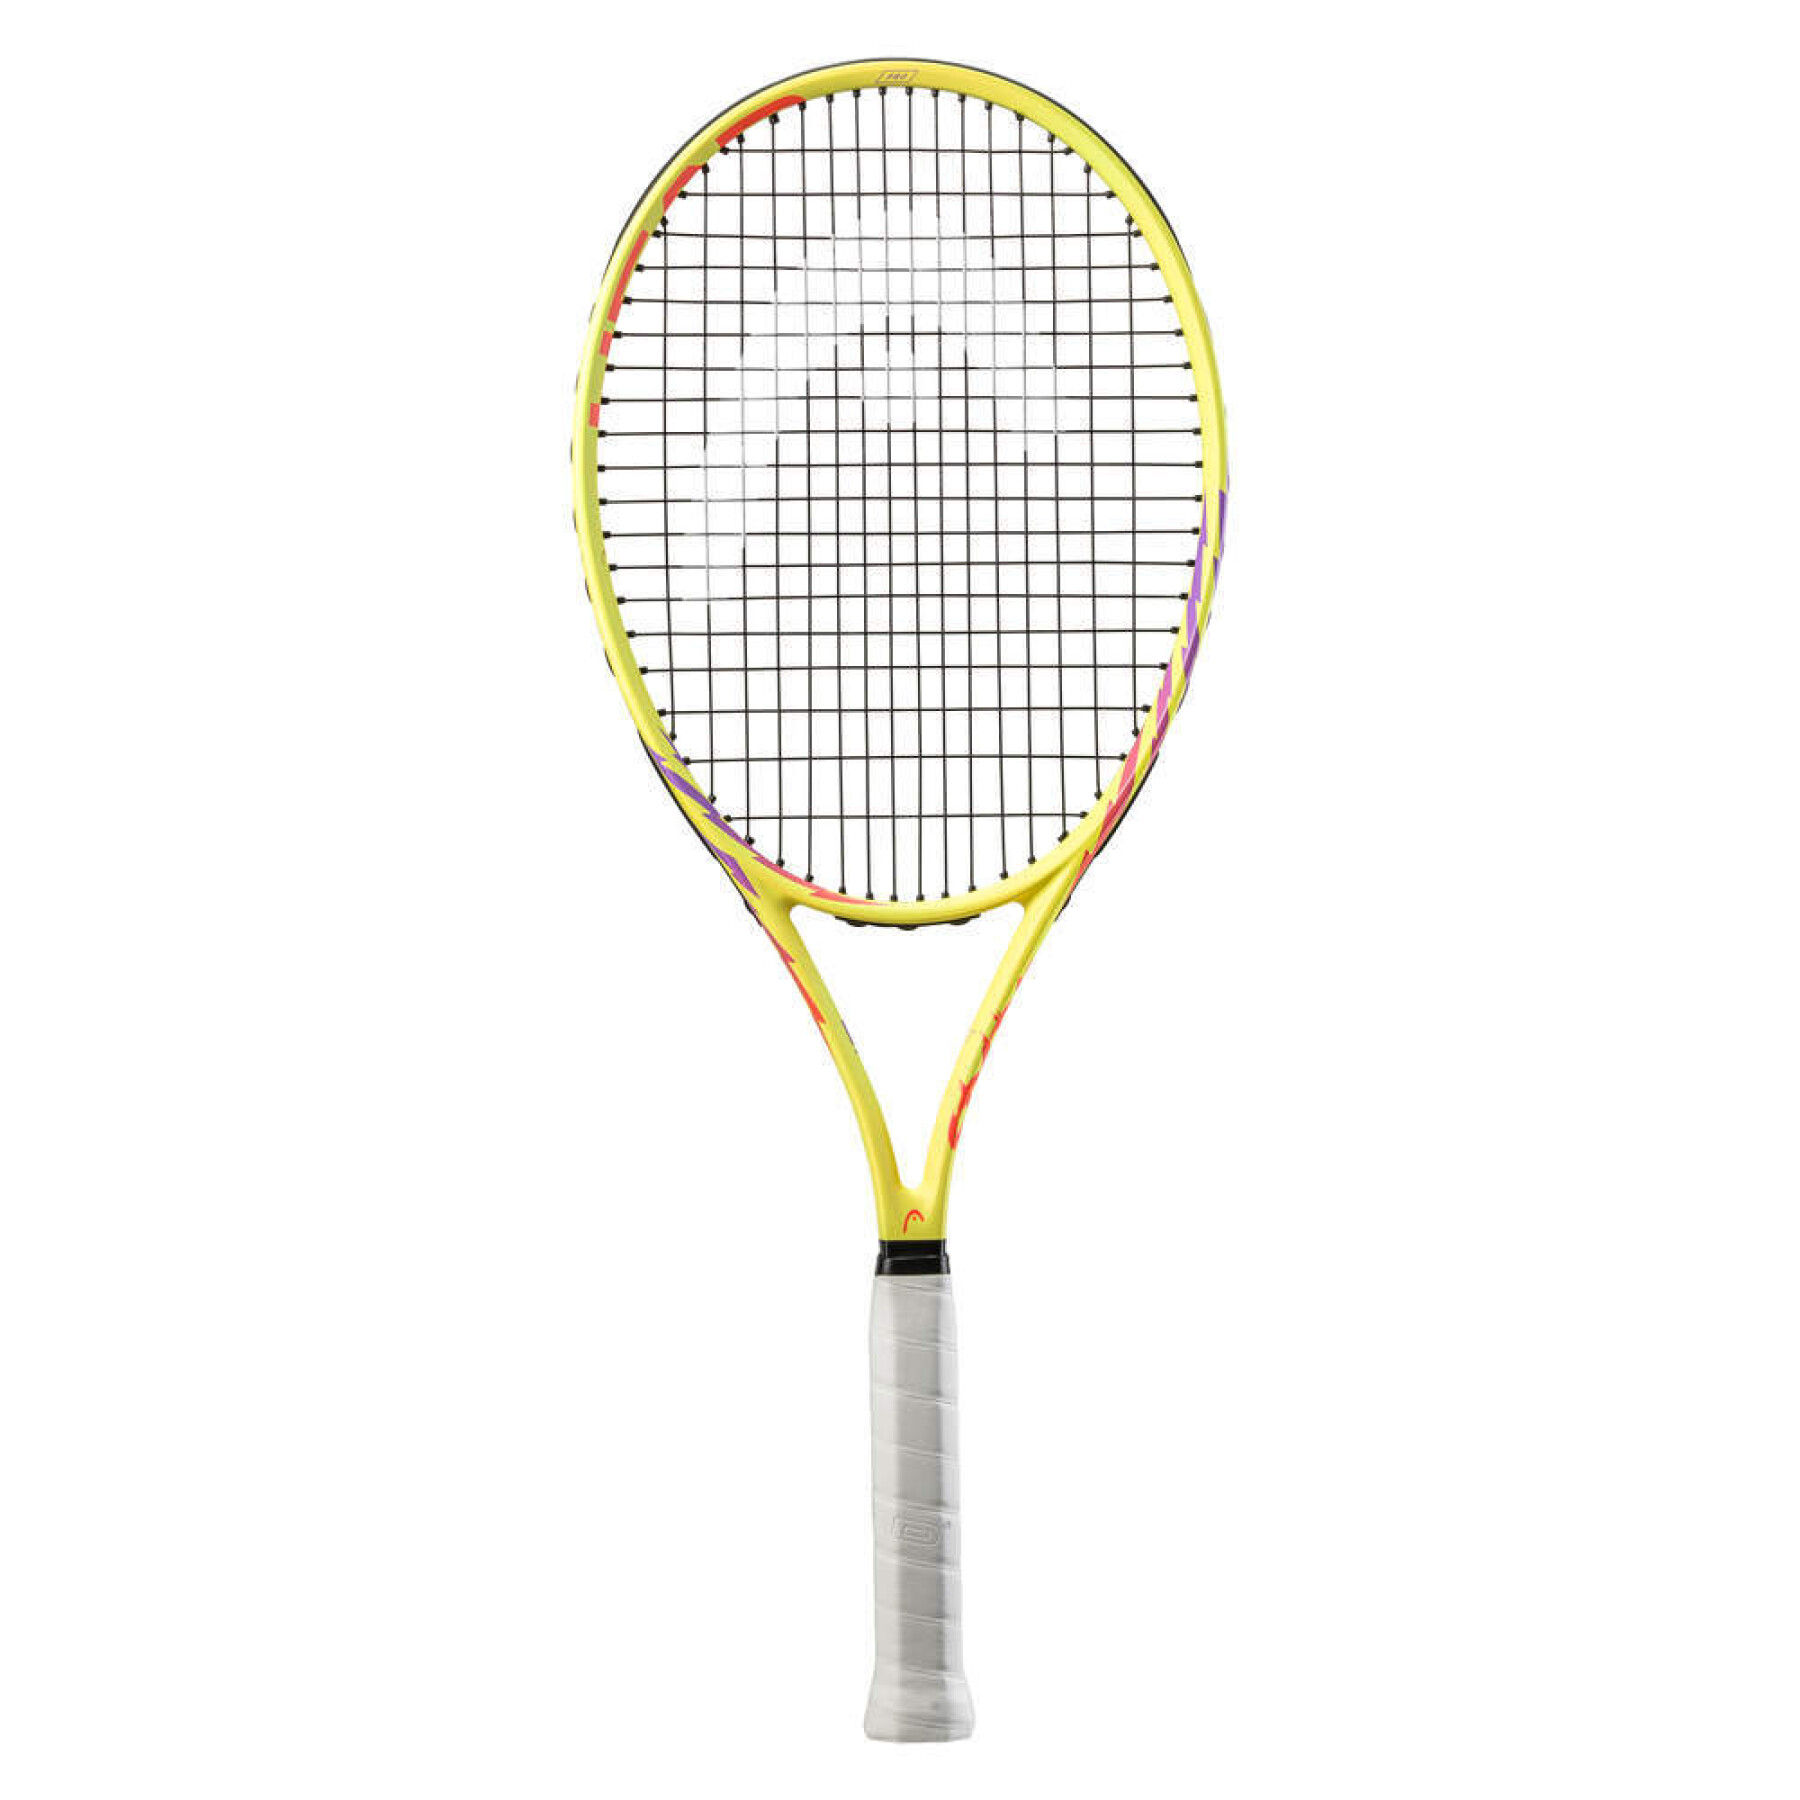 Tennis racket Head Mx Spark Pro